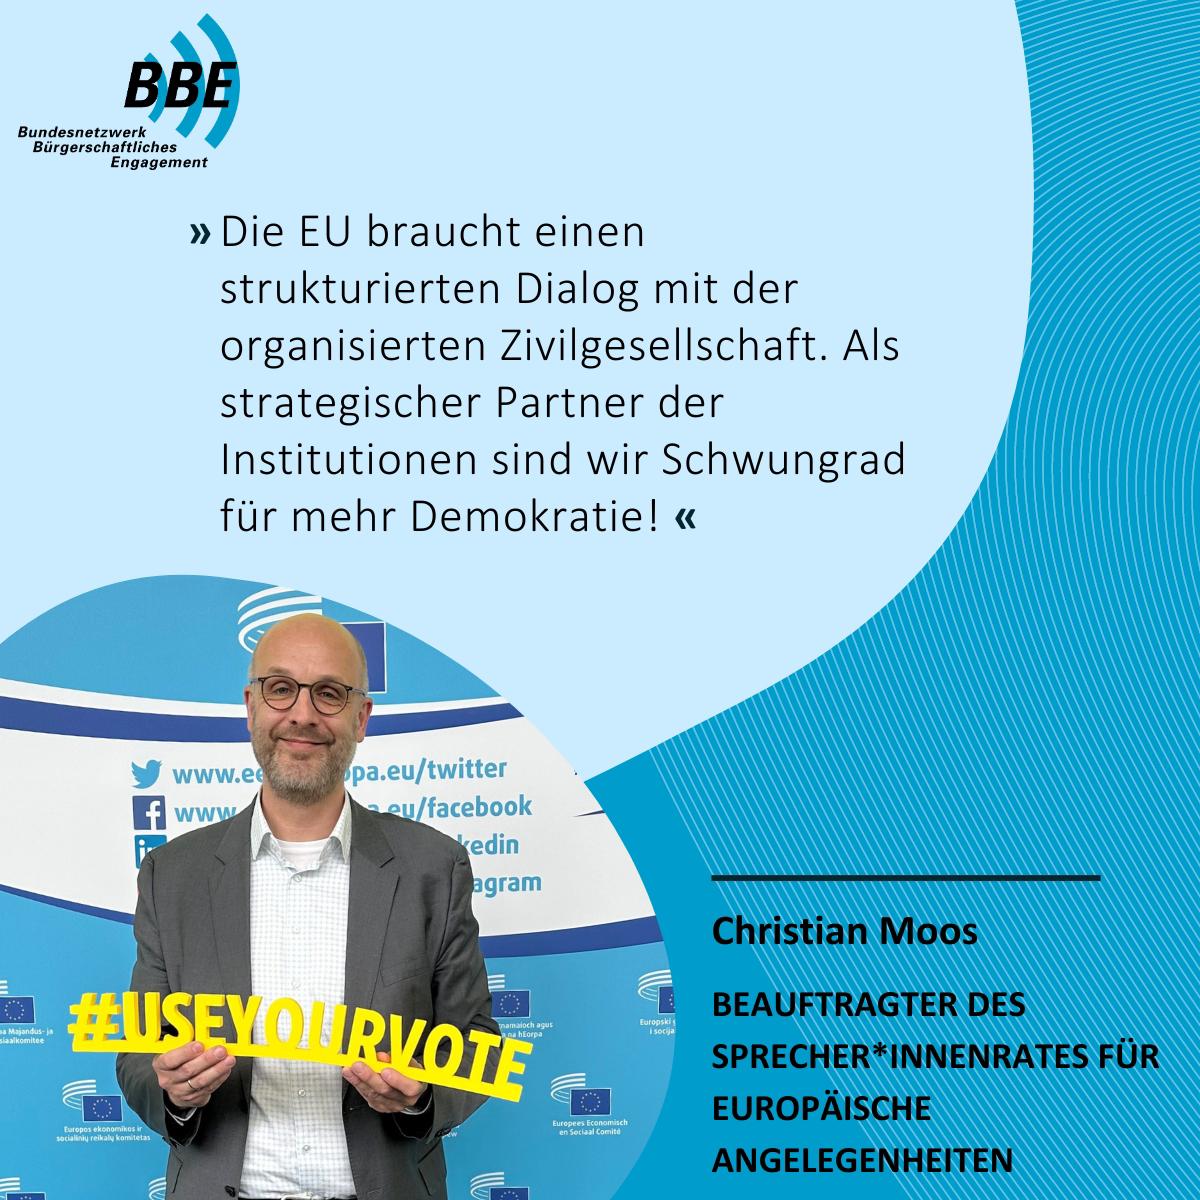 🌟 BBE-Testimonial-Kampagne #CivilSocietyForEurope zur #Europawahl startet heute mit BBE-Europabeauftragtem @ChristianMoos! In den kommenden Wochen machen wir die Stimmen der Zivilgesellschaft sichtbar. Für eine starke #Zivilgesellschaft in #Europa! 🇪🇺 #NutzedeineStimme #EurHope